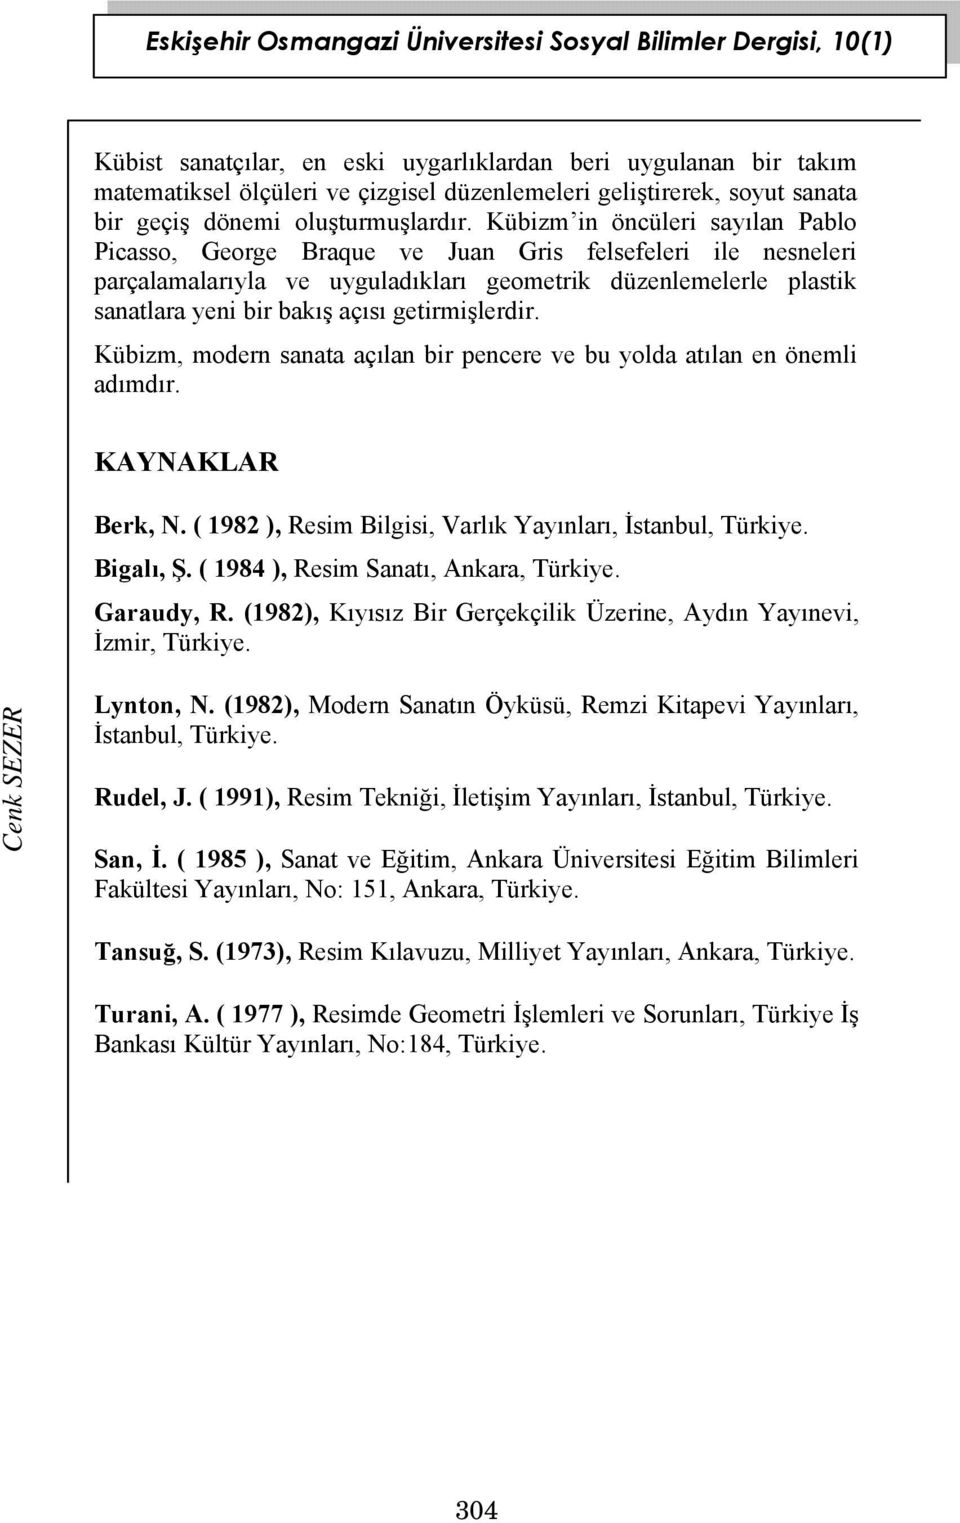 getirmişlerdir. Kübizm, modern sanata açılan bir pencere ve bu yolda atılan en önemli adımdır. KAYNAKLAR Berk, N. ( 1982 ), Resim Bilgisi, Varlık Yayınları, İstanbul, Türkiye. Bigalı, Ş.